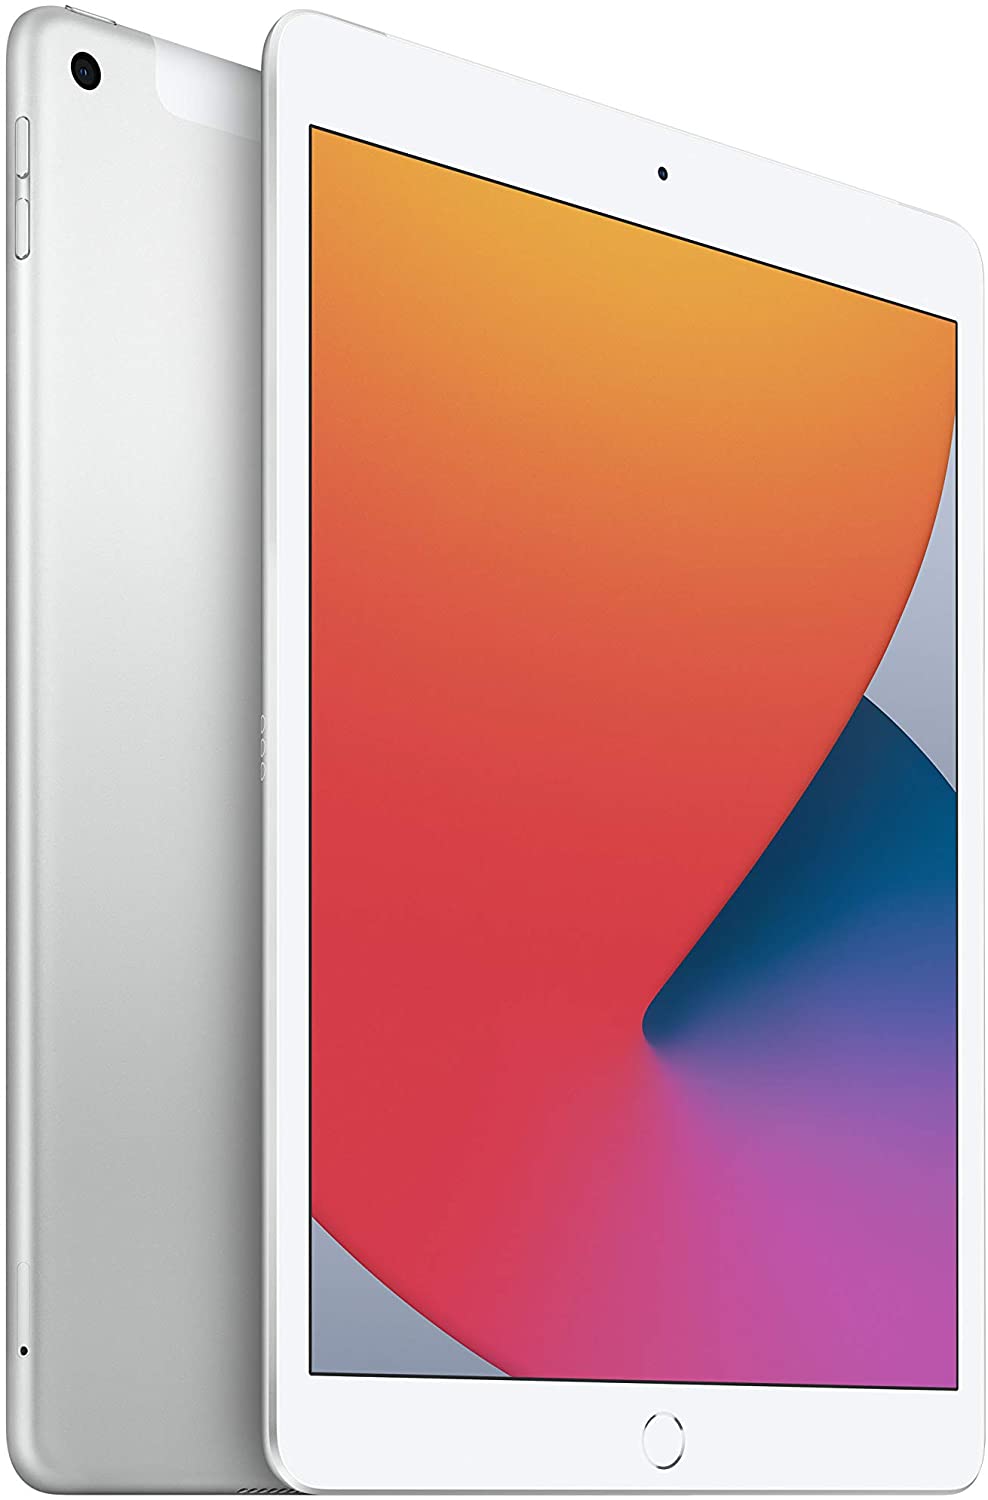 Apple iPad 8th Gen (2020) 10.2in 32GB Wifi + Cellular (Unlocked) - Silver (Pre-Owned)